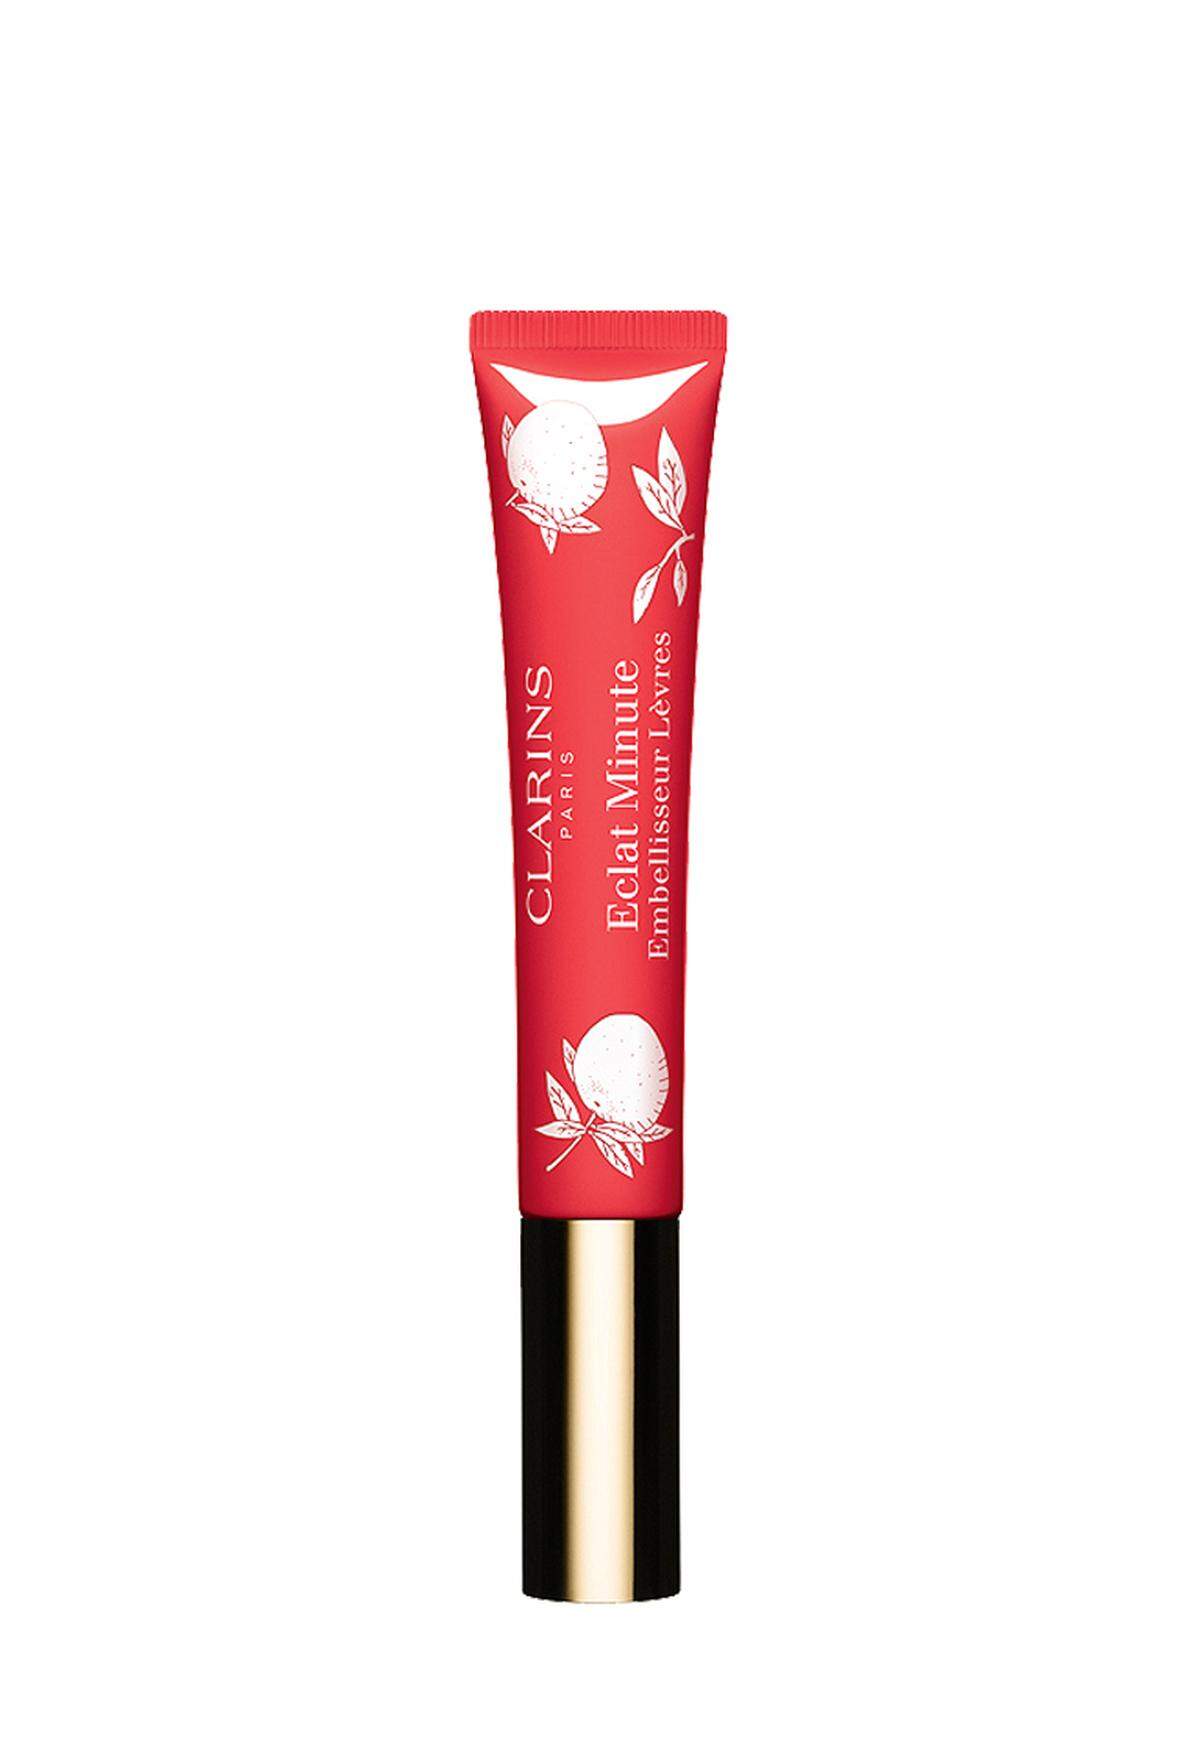 Lippenpflege „Eclat Minute“ von Clarins, 20,95 Euro, im Fachhandel erhältlich